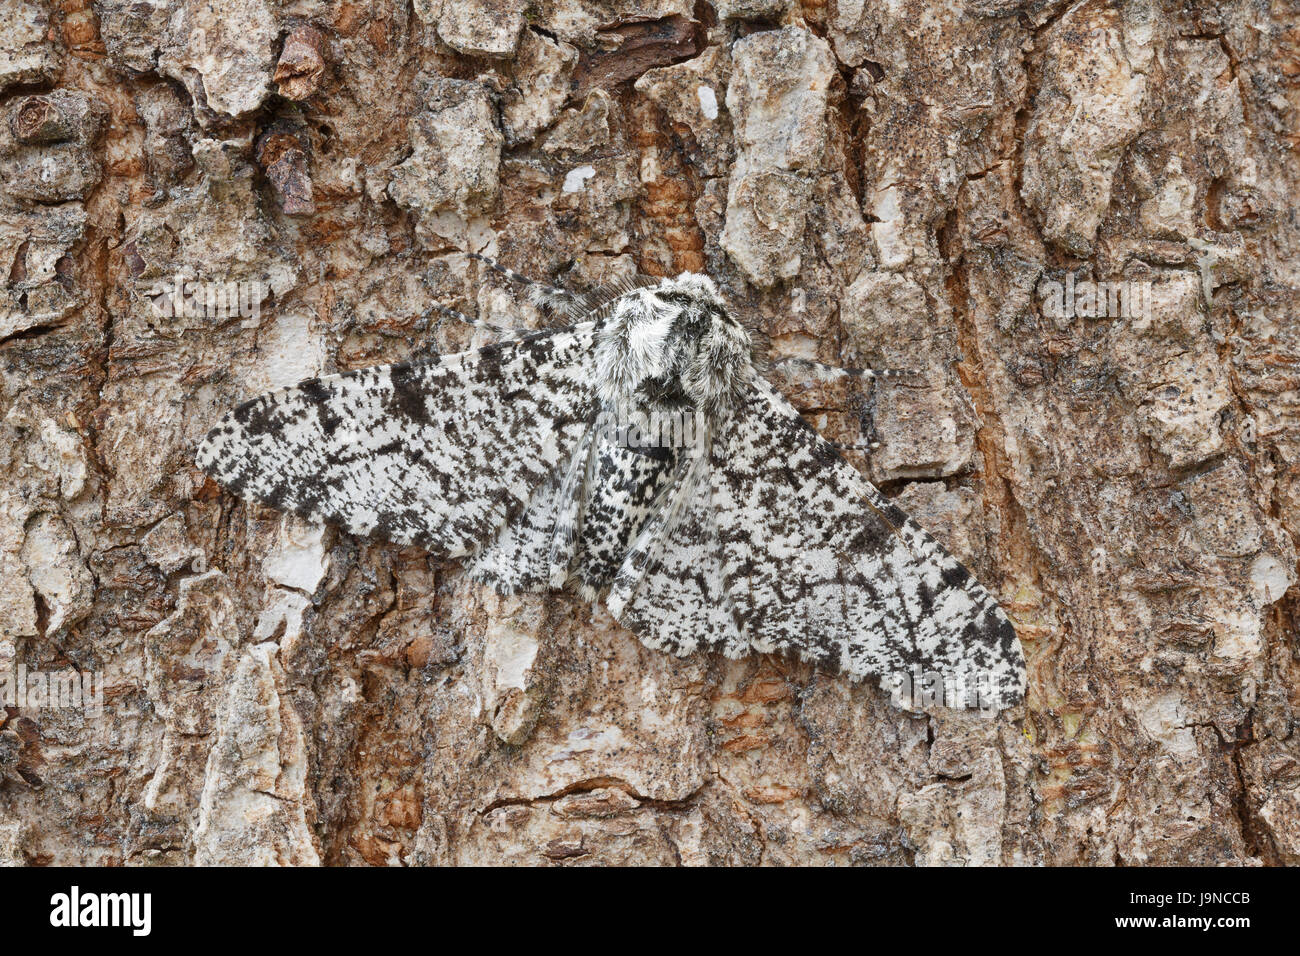 Truffée d'amphibien, Biston betularia, forme pâle, camouflée sur un tronc d'arbre, Monmouthshire, mai. Famille des Geometridae. Banque D'Images